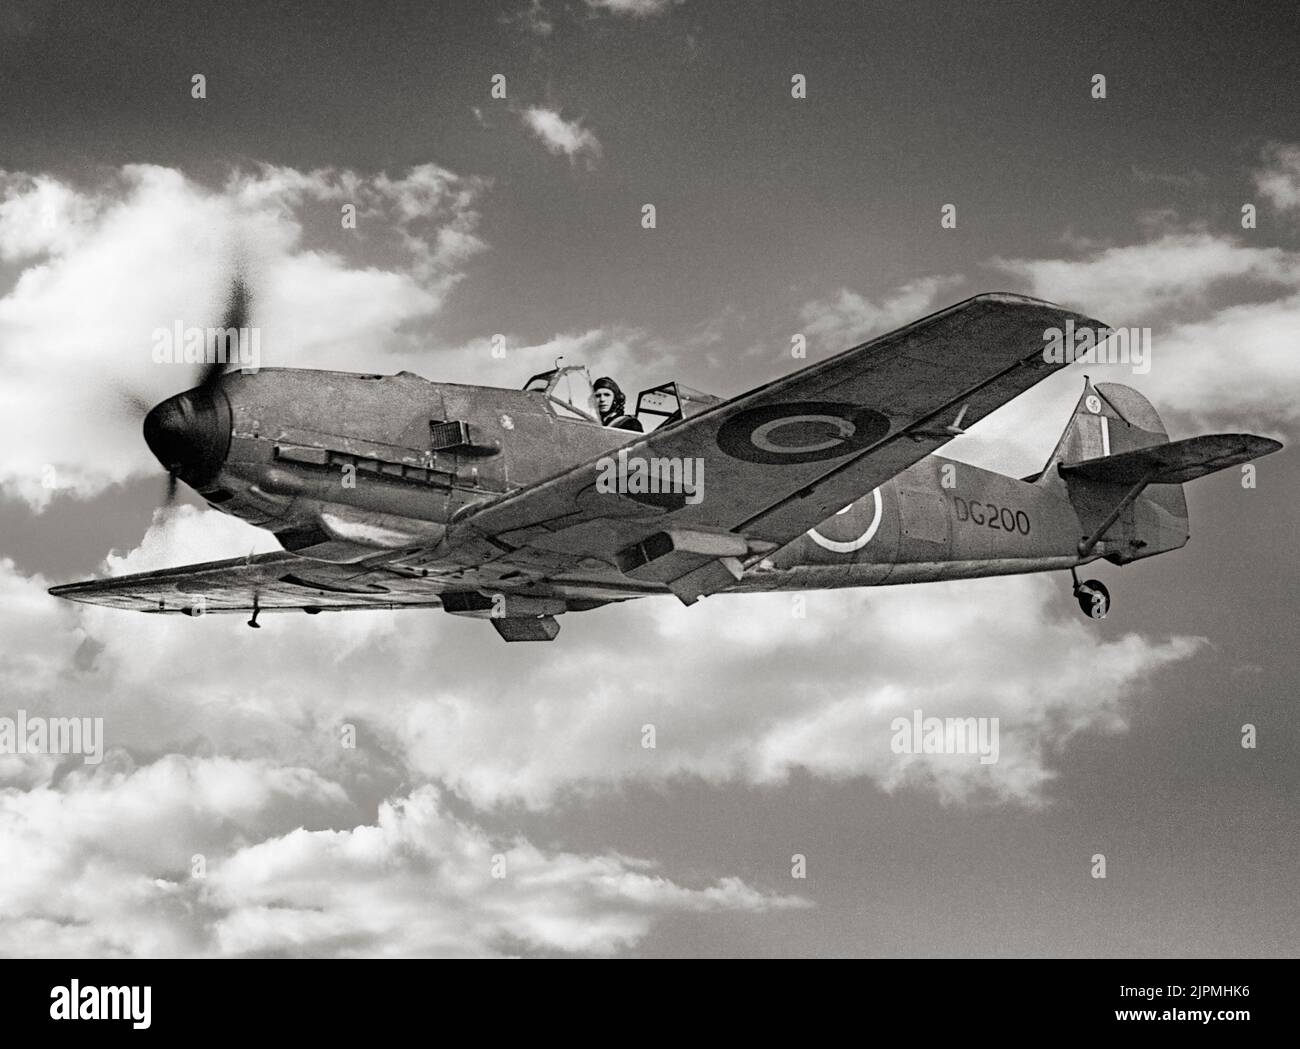 Un Messerschmitt Bf capturado 109E-3, DG200, en vuelo mientras servía en el vuelo N º 1426 (aviones enemigos). El avión aterrizó por la fuerza en Manston, Kent, el 27 de noviembre de 1940, después de ser atacado por los Spitfire Supermarine del Escuadrón Nº 66 de la RAF sobre el estuario del Támesis. Después de la reparación en el establecimiento Royal Aircraft, se entregó a Rolls-Royce Ltd en 1941 para las pruebas de rendimiento del motor. Más tarde fue pasado al Establecimiento Experimental de Aeronaves y Armamento en Boscombe, y puesto en almacenamiento. Foto de stock